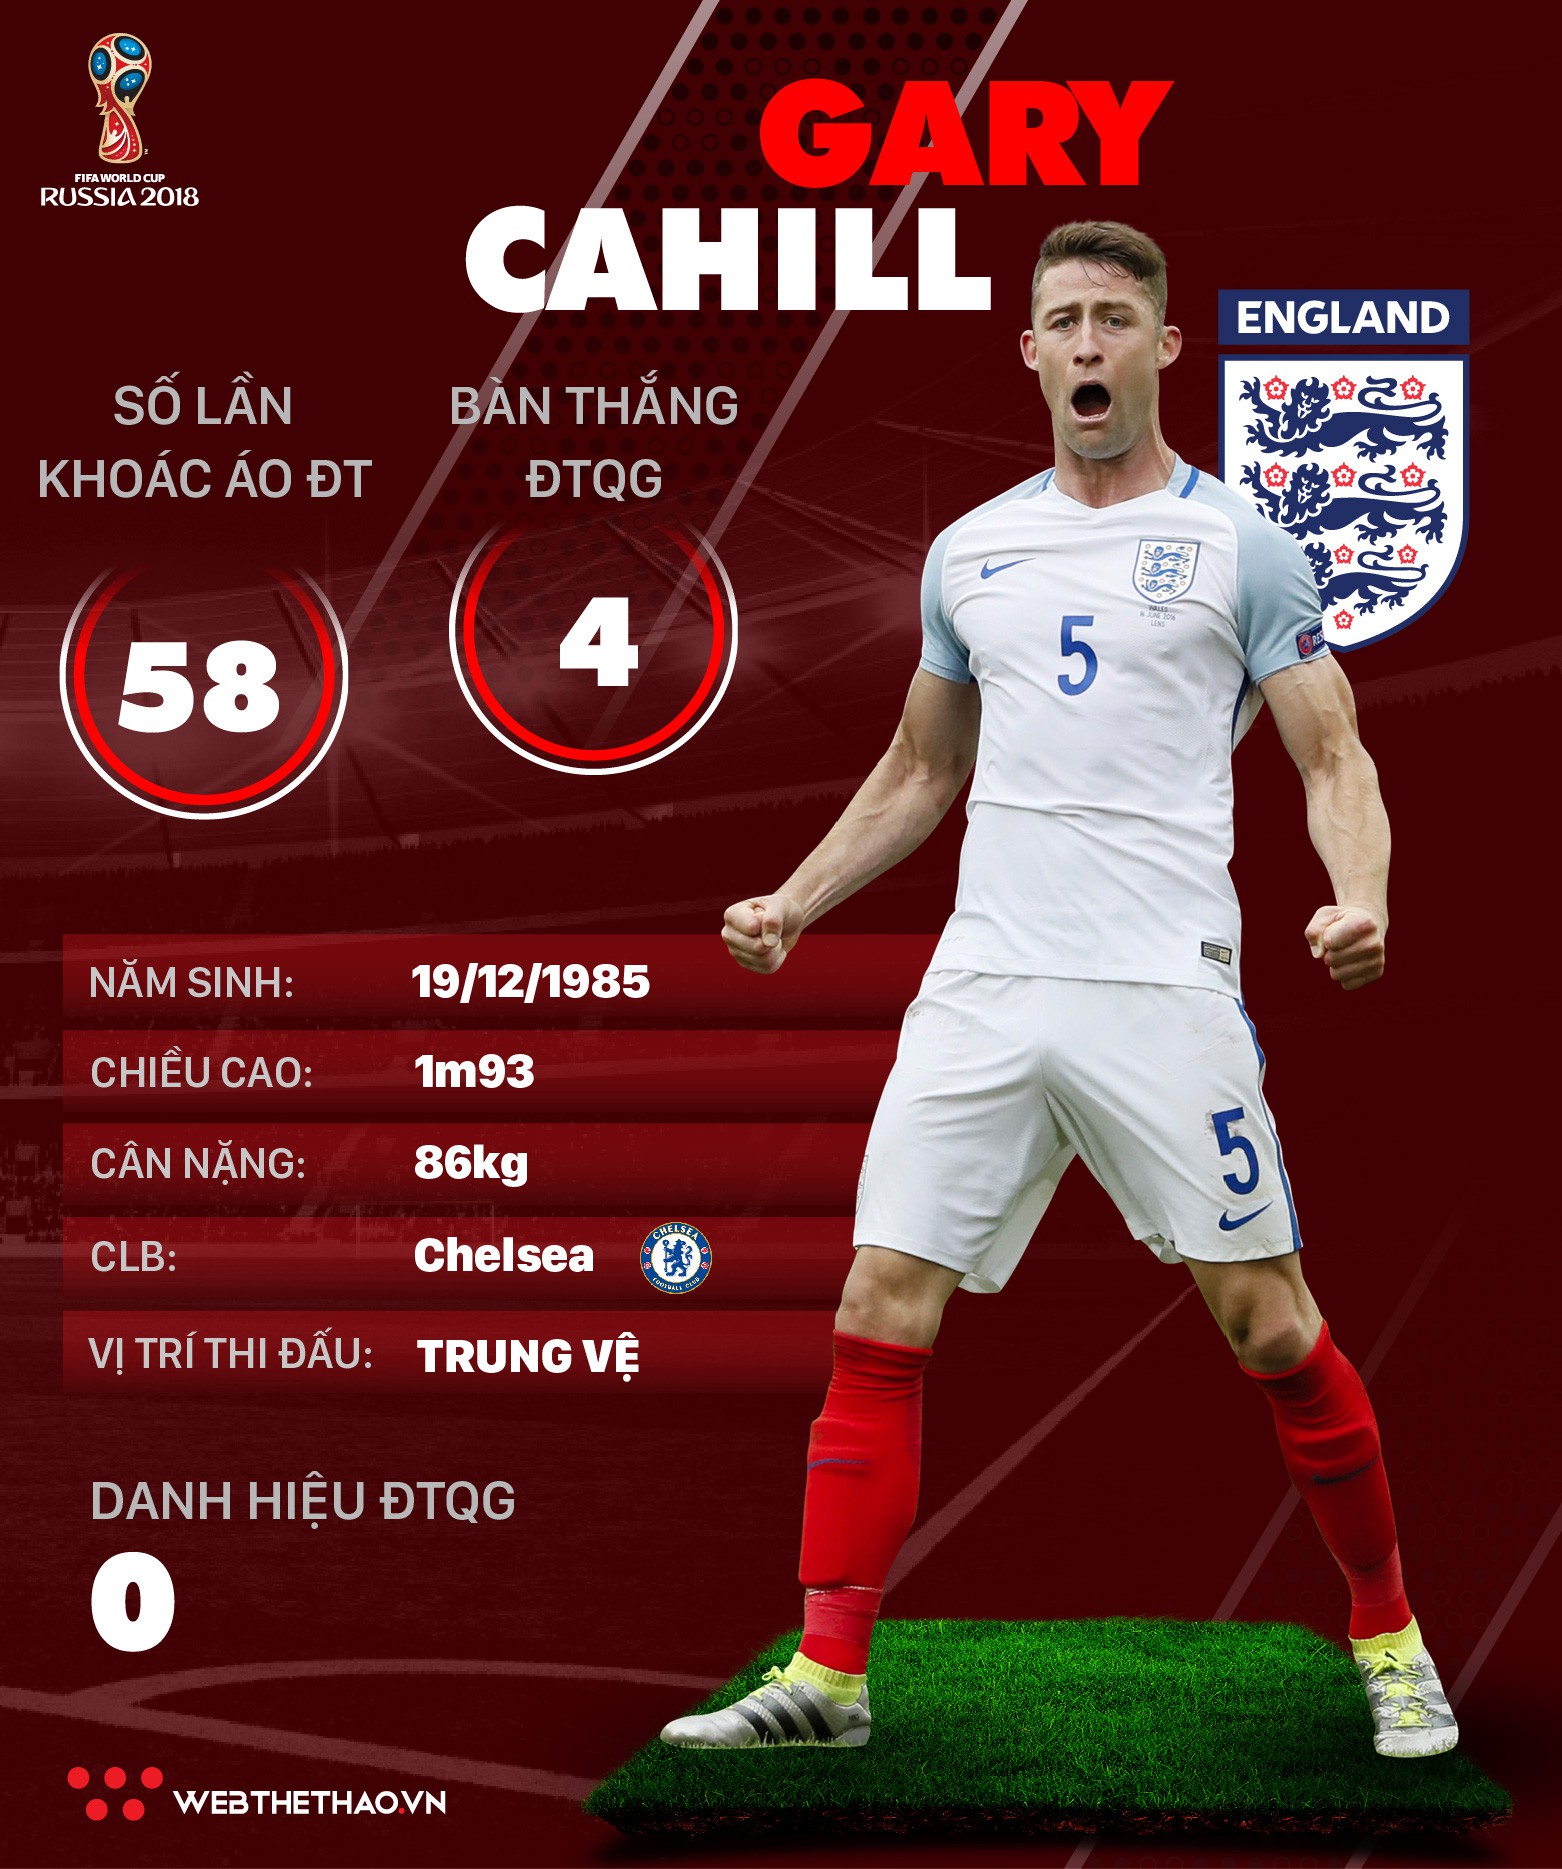 Thông tin cầu thủ của Gary Cahill ĐT Anh dự World Cup 2018